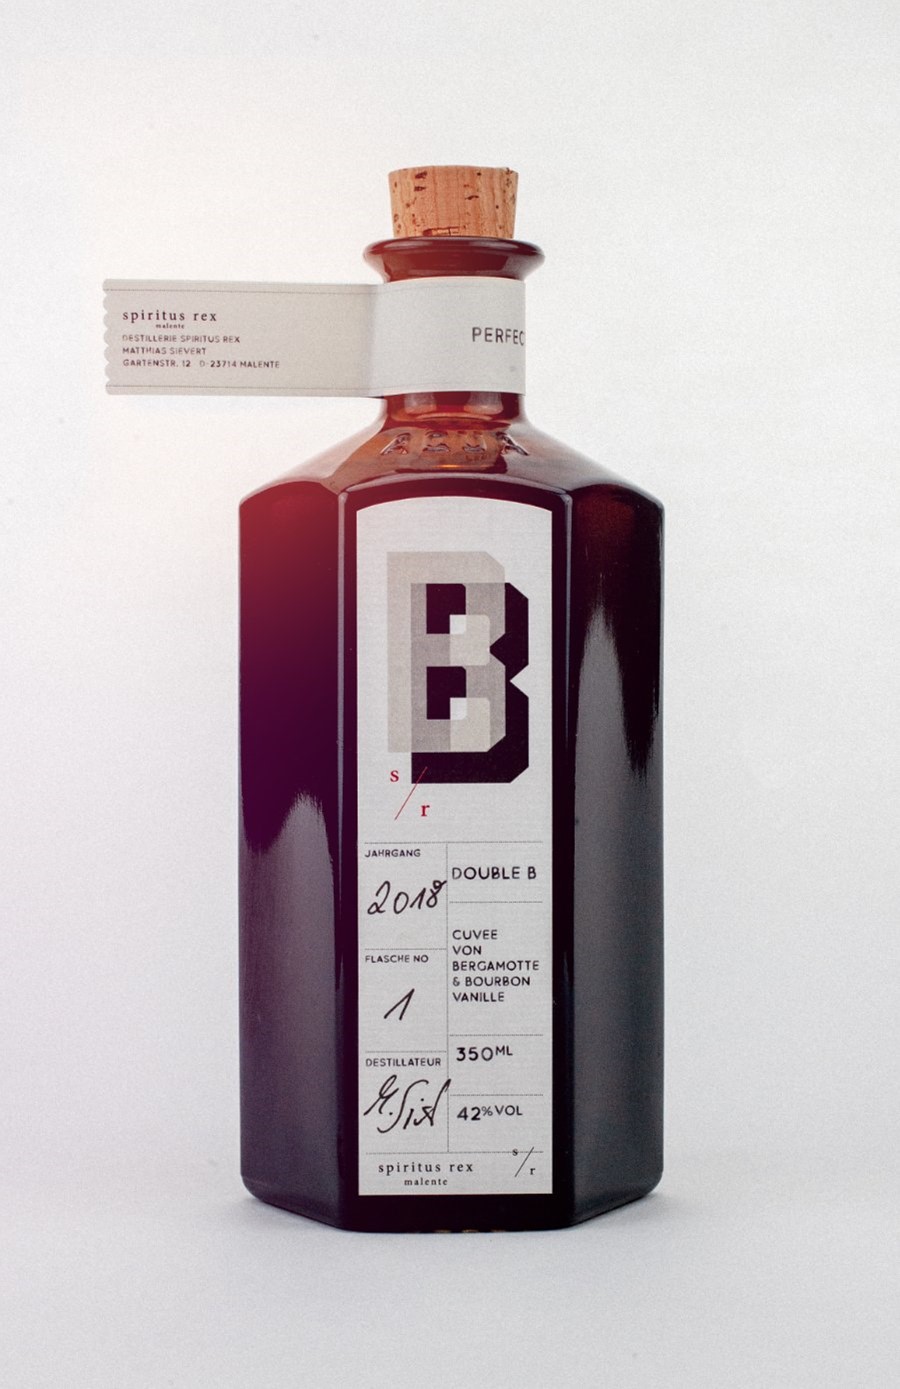 Cuvée von Bergamotte und Bourbon Vanille 42% Vol., Spiritus Rex (Originalrezept Stählemühle) 0,35 l